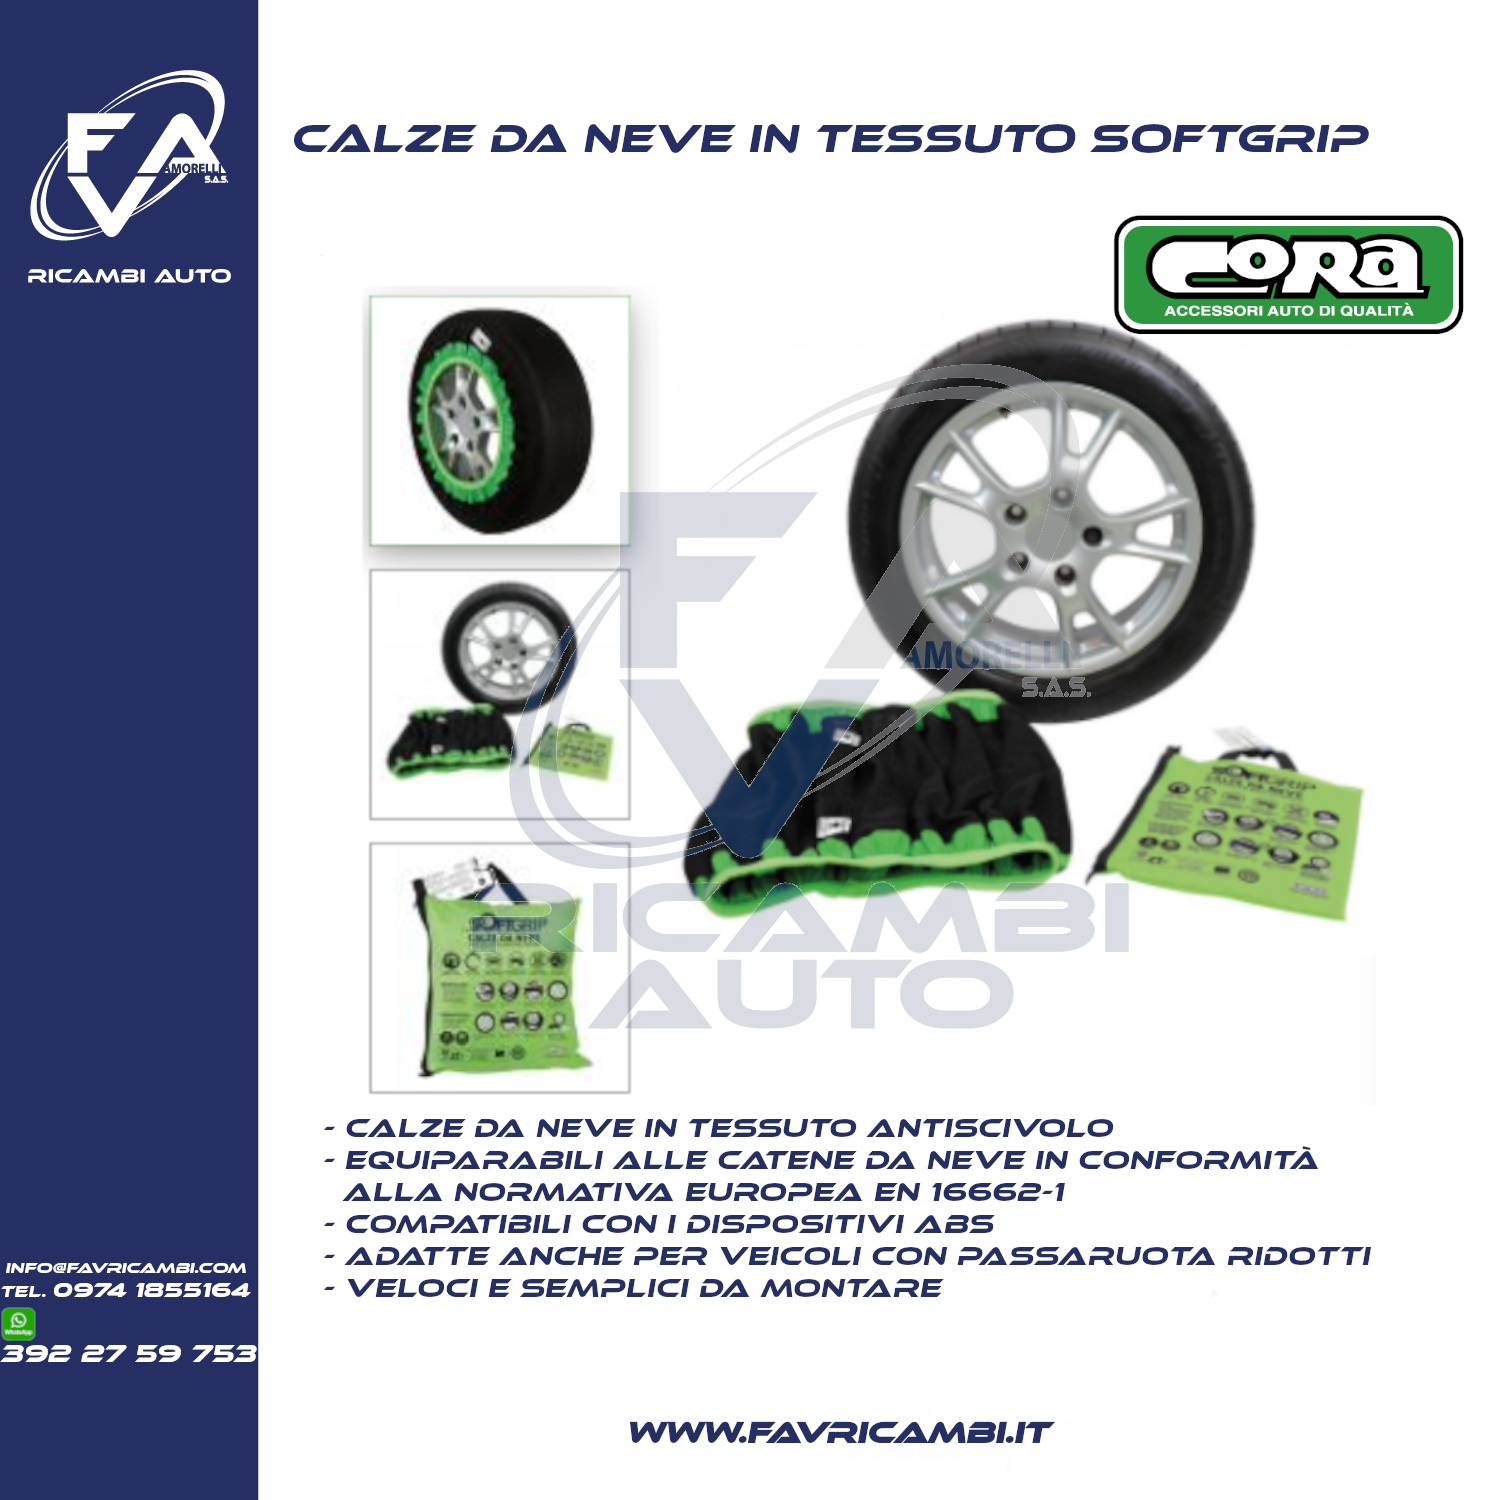 Cora Calze da neve auto SoftGrip 5 per pneumatici misure 265/35-21